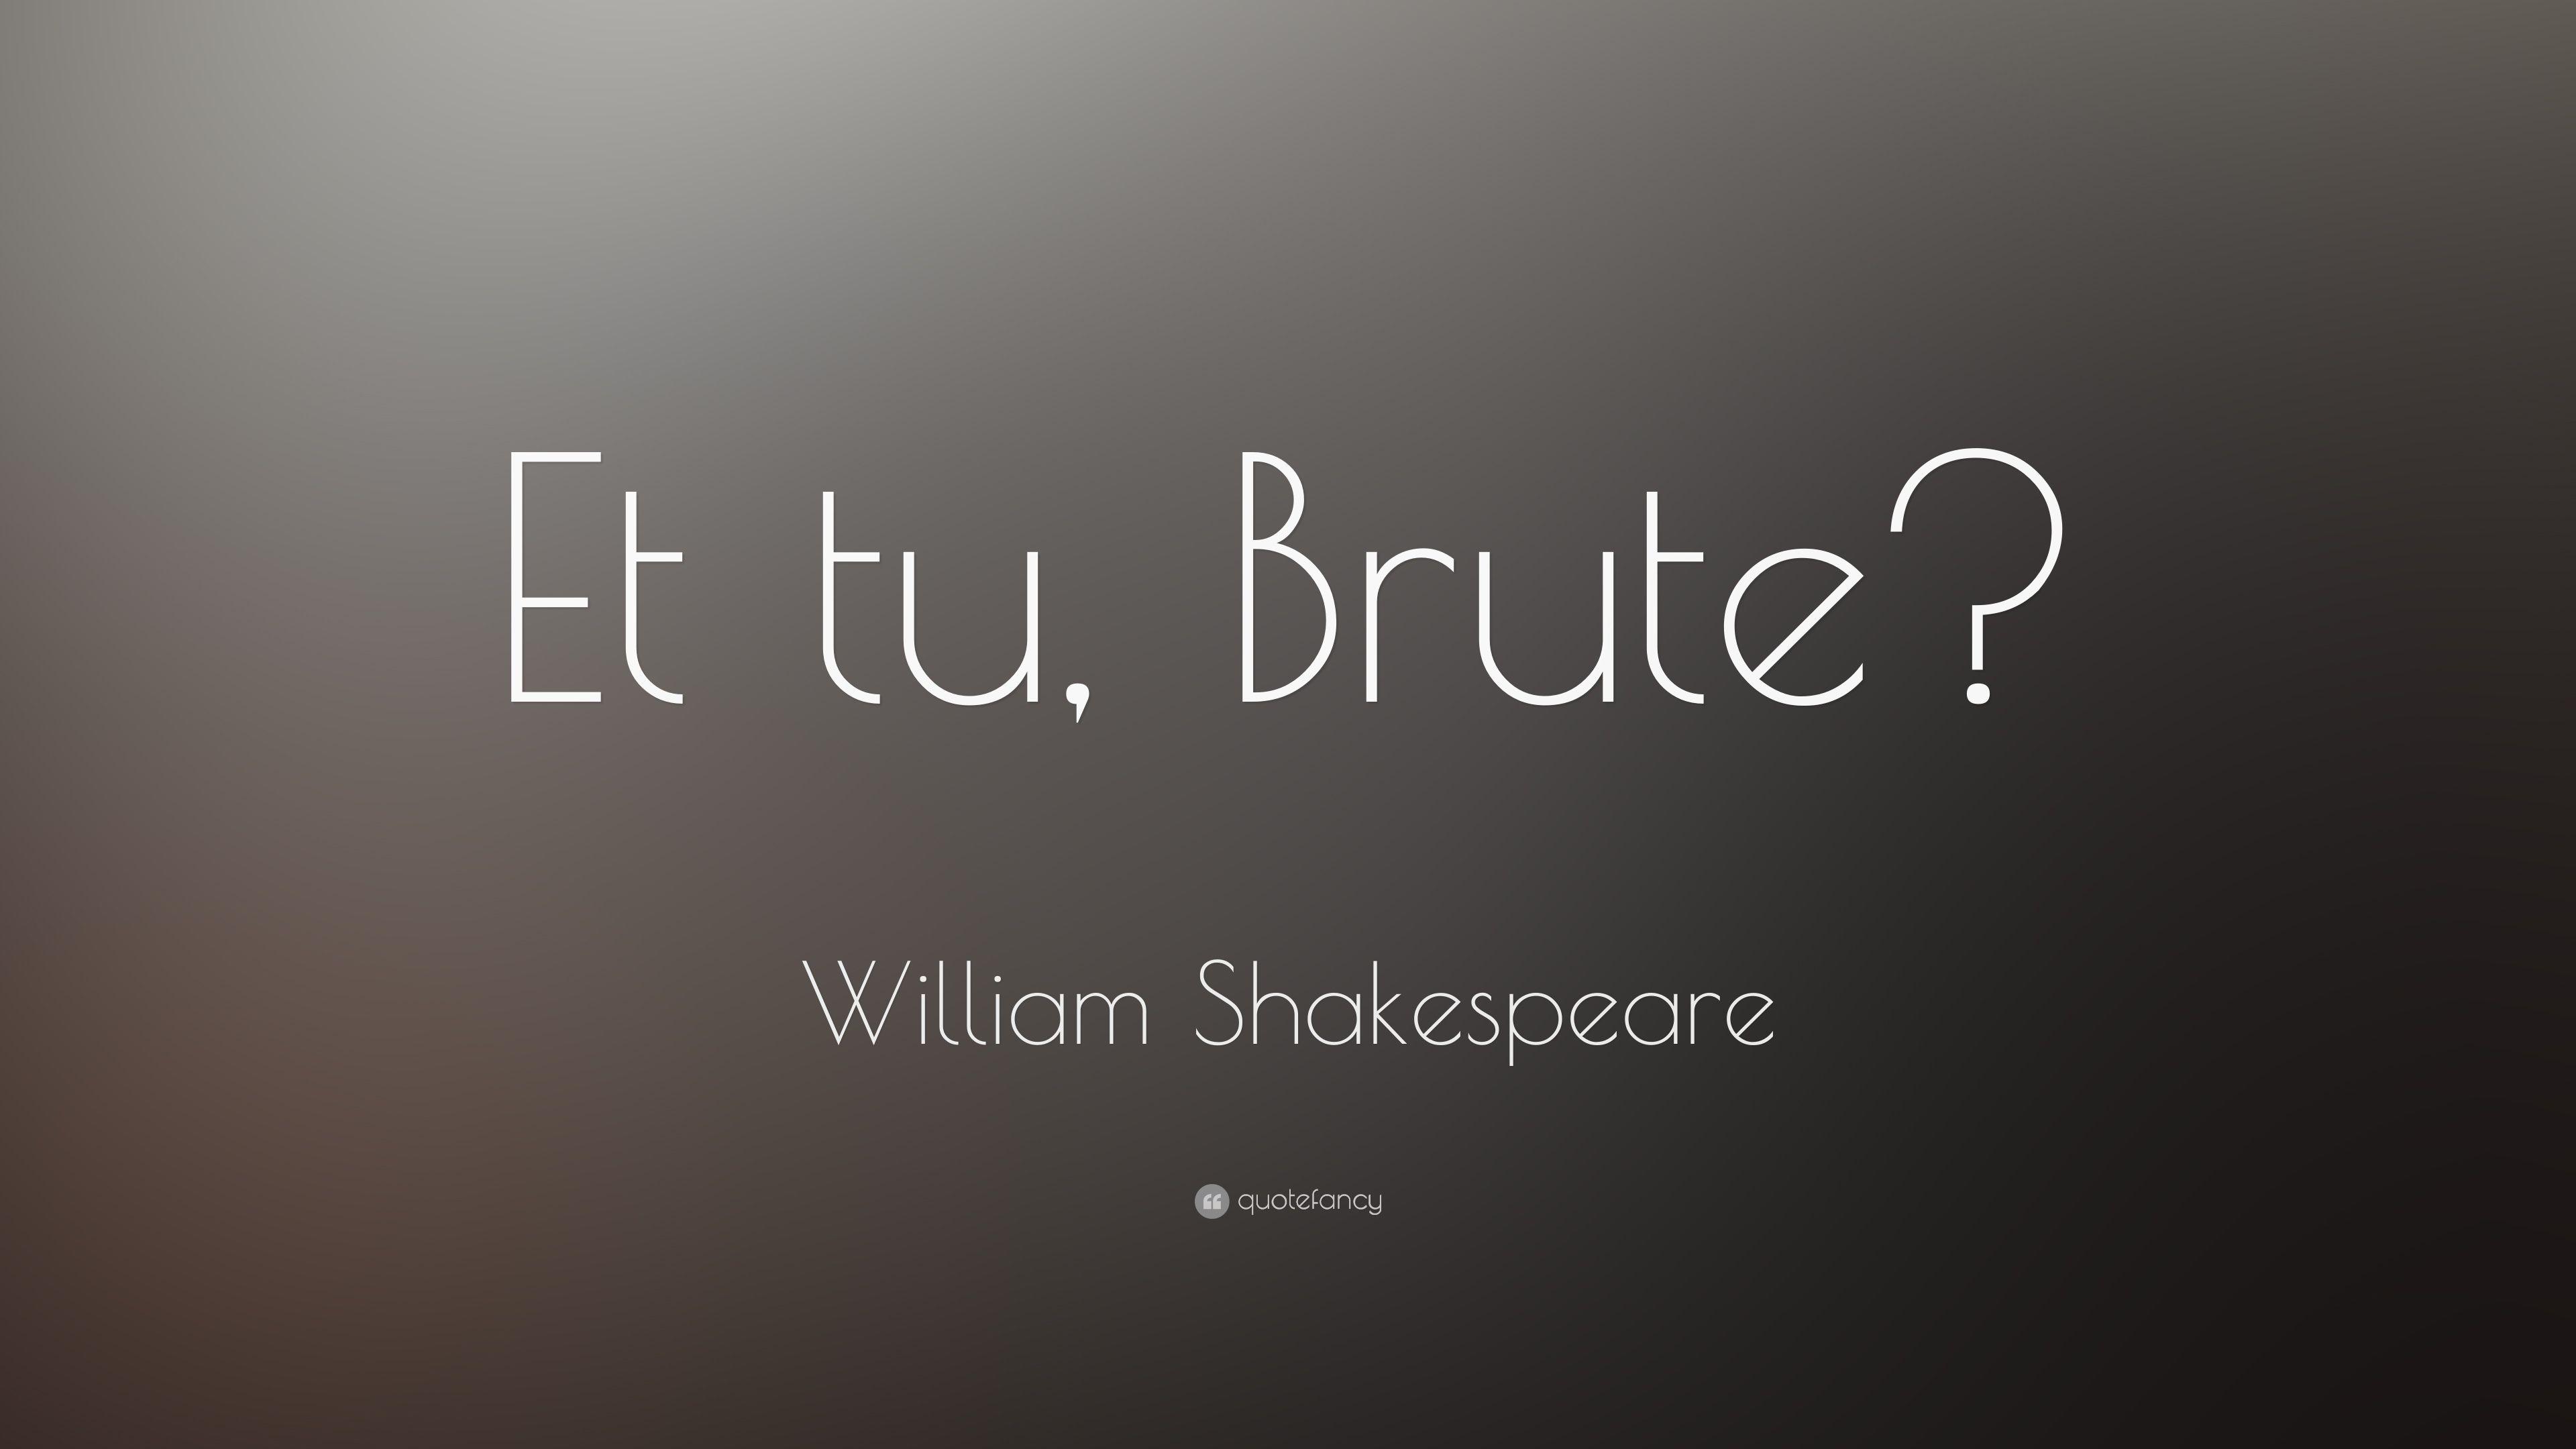 William Shakespeare Quote: “Et tu, Brute?” 14 wallpaper